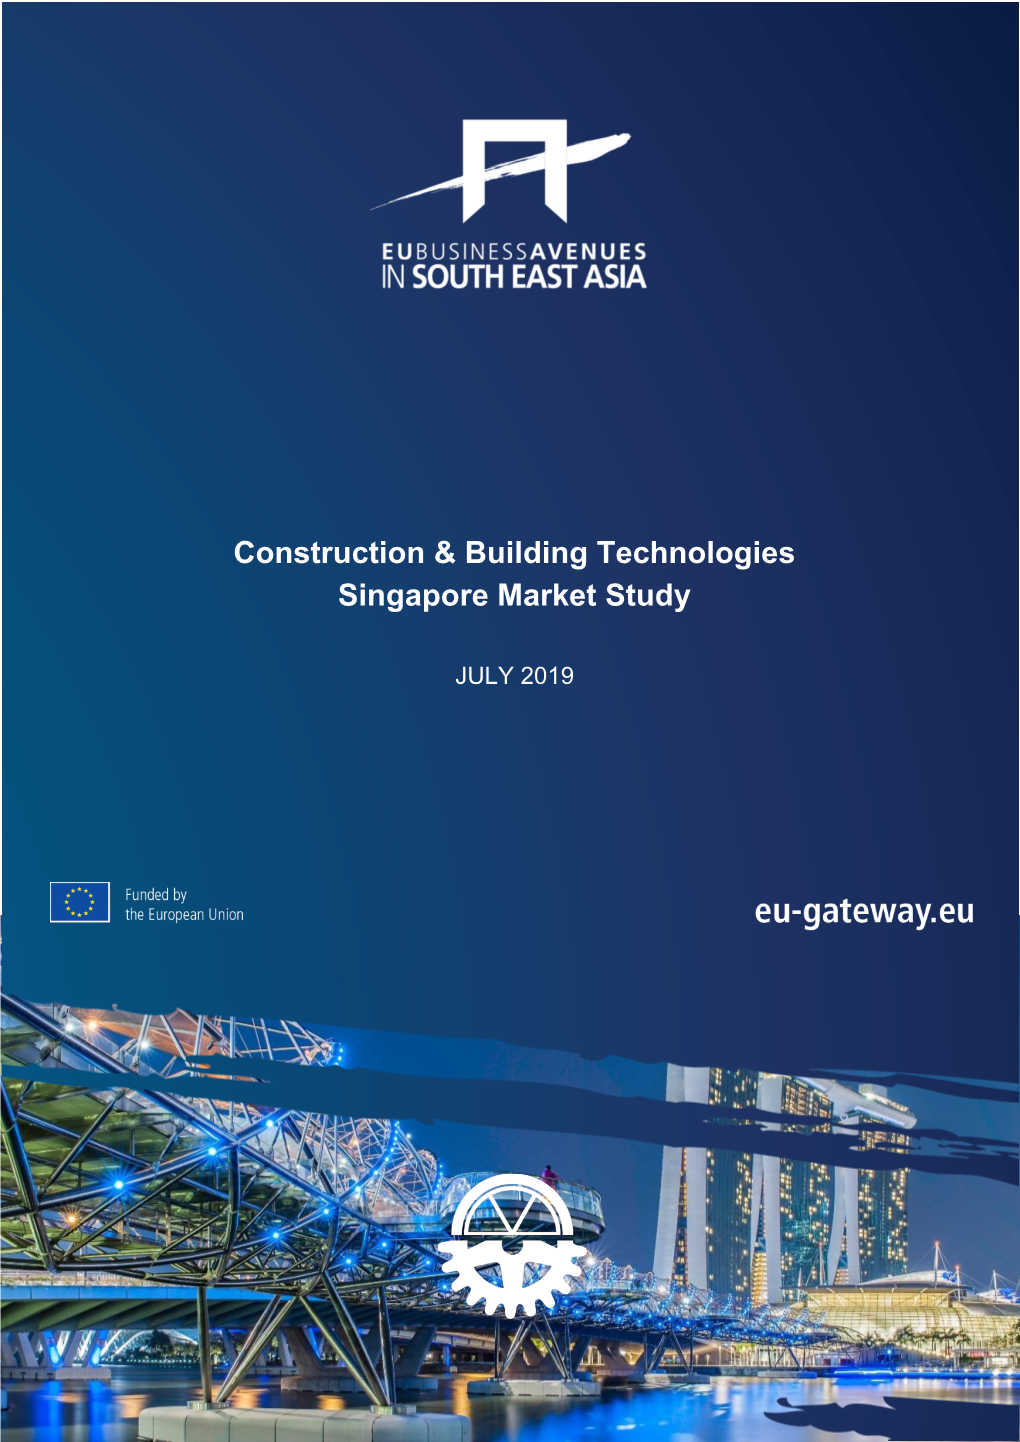 Construction & Building Technologies (Singapore Market Study)